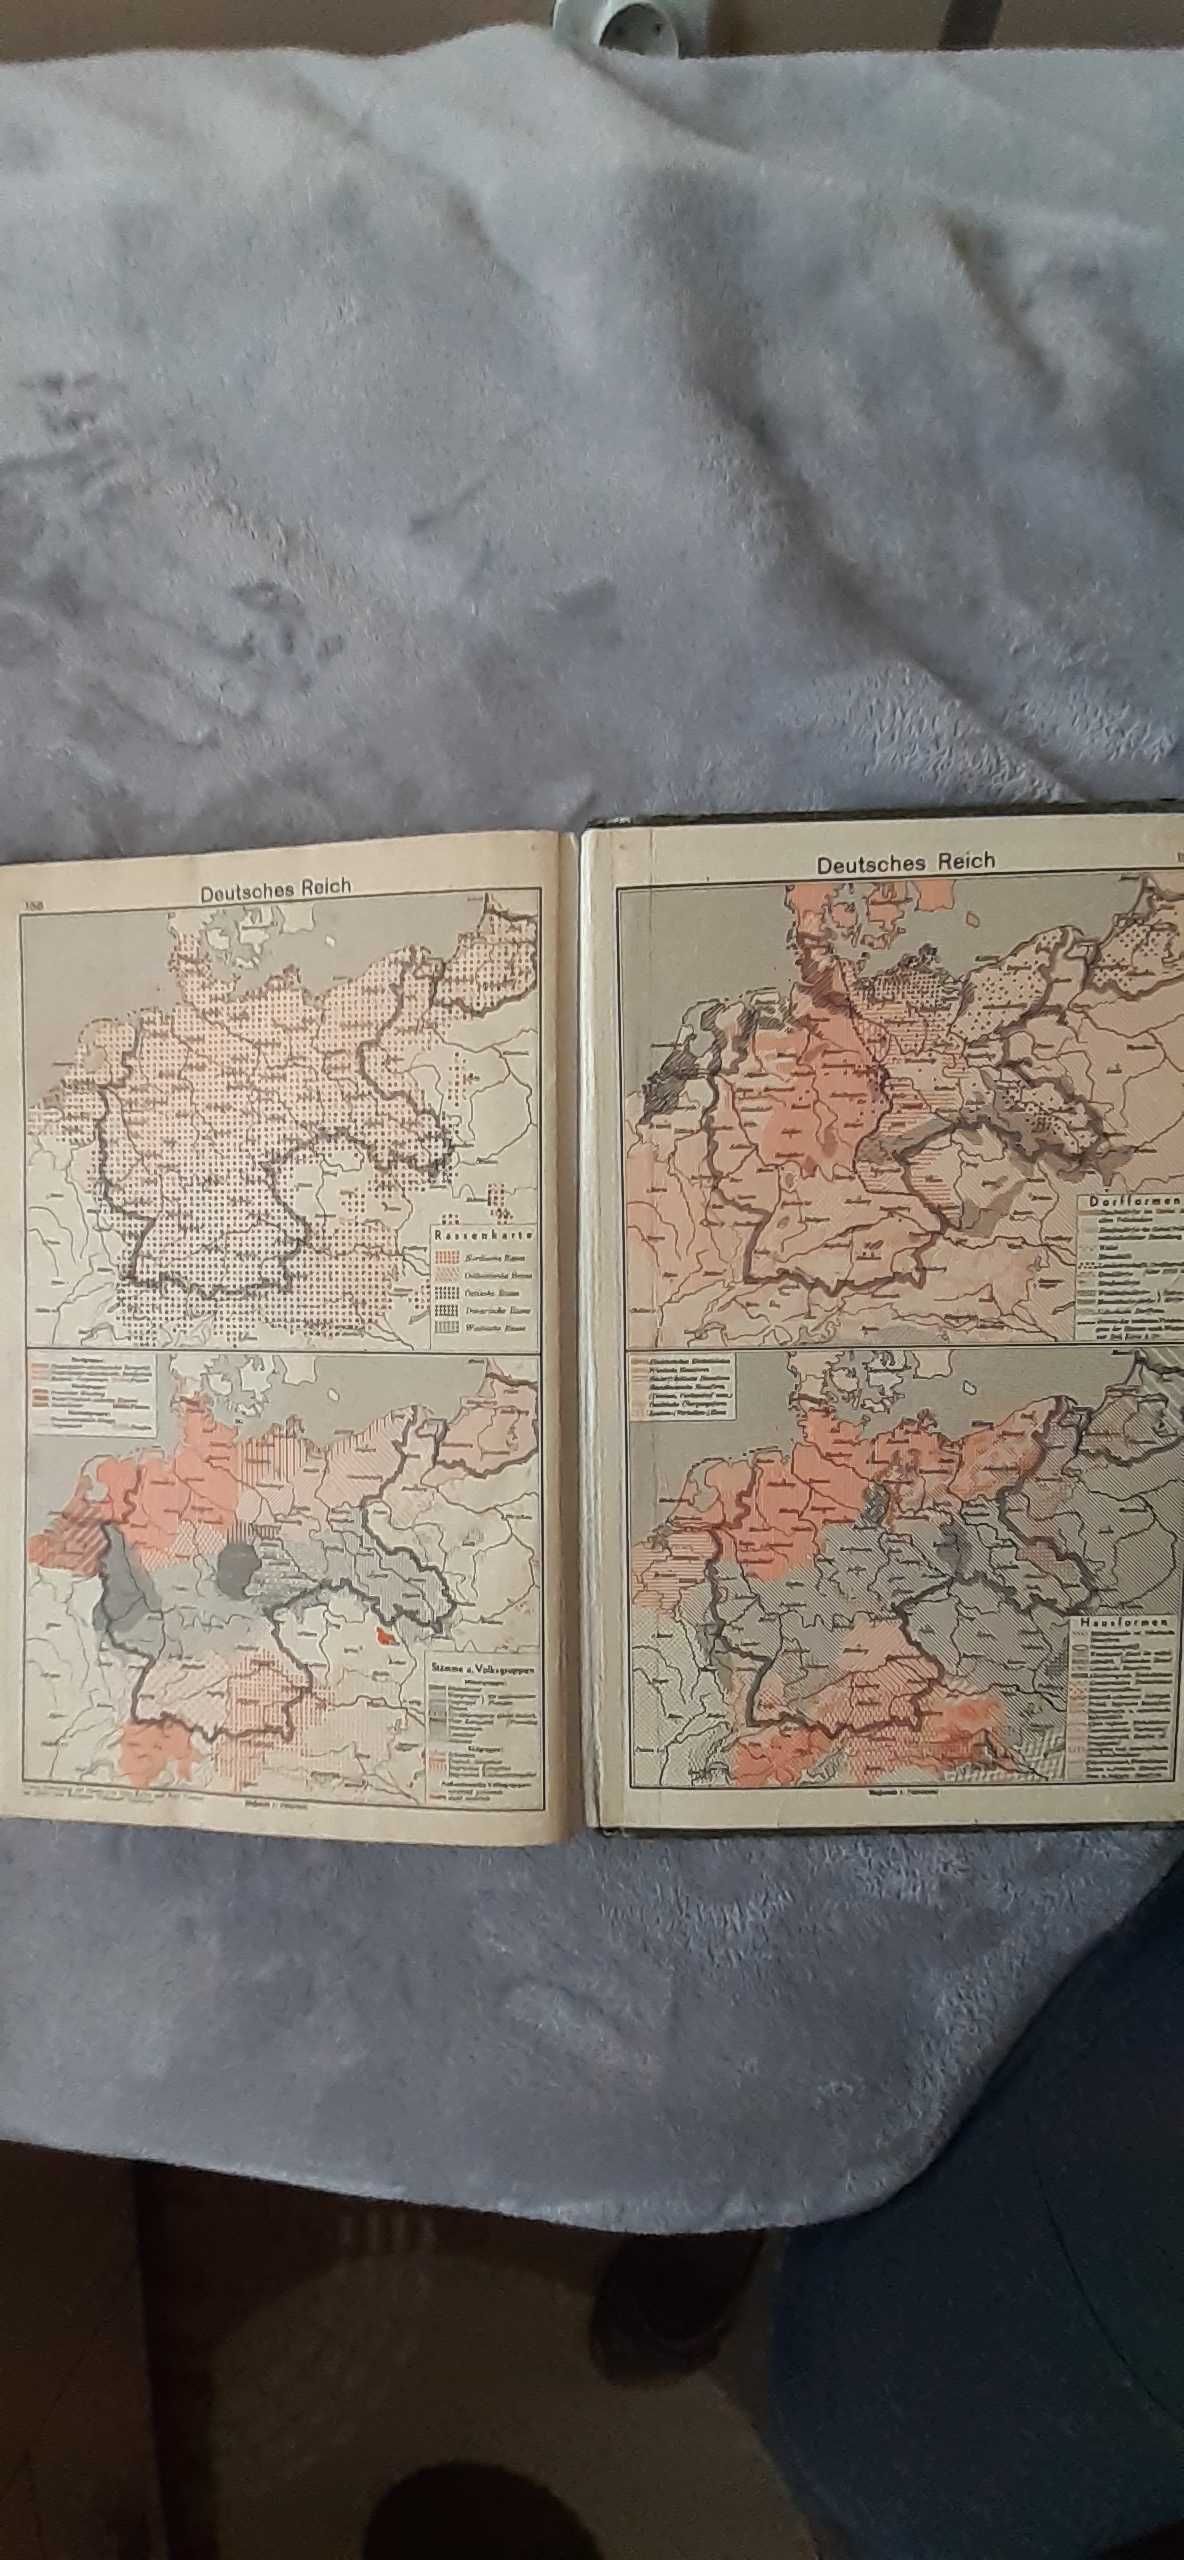 Stary przedwojenny niemiecki atlas geograficzny.